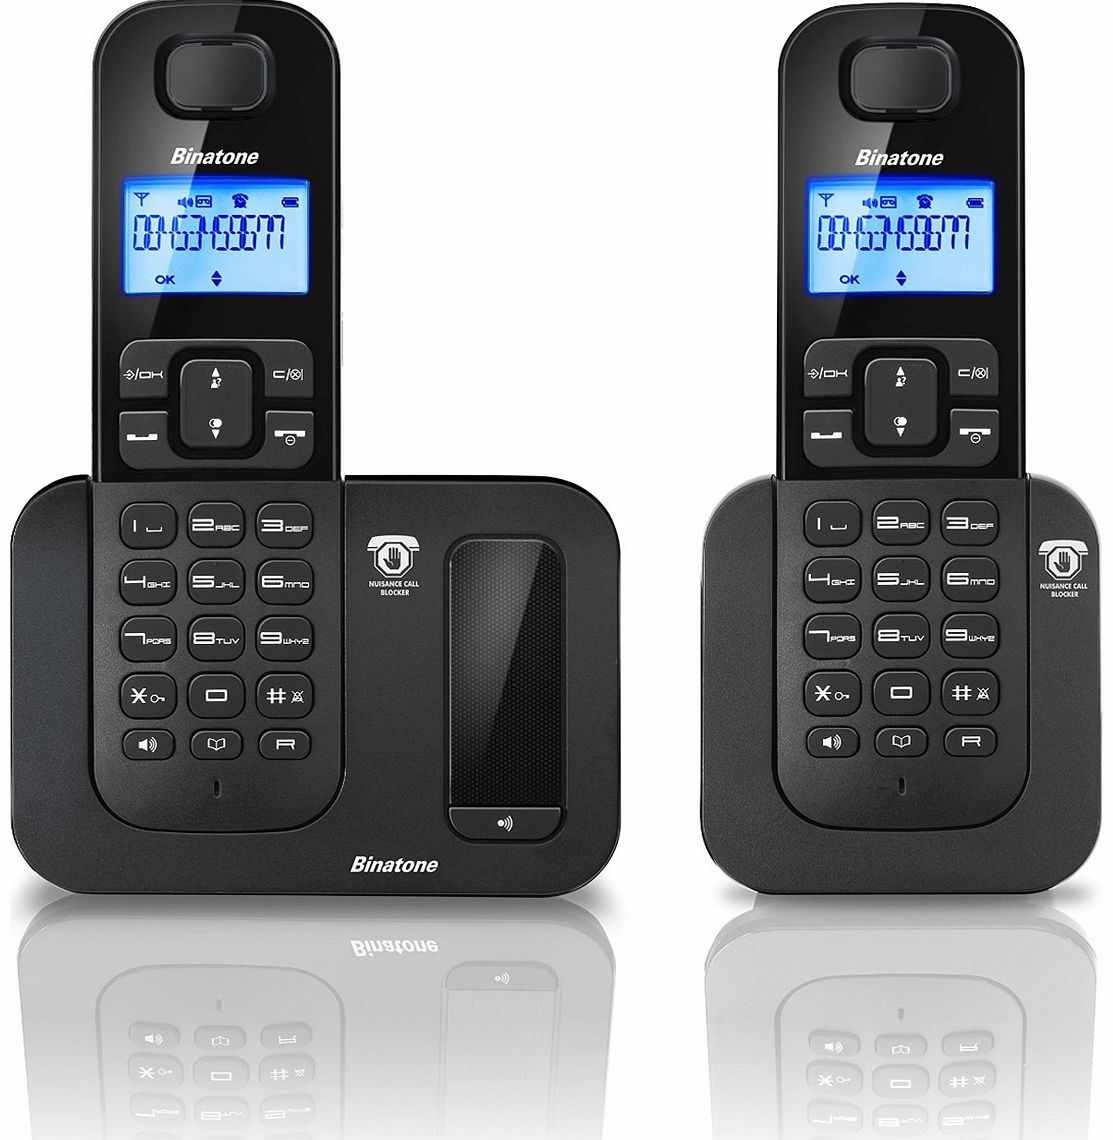 Binatone 6015-TWIN Home Phones